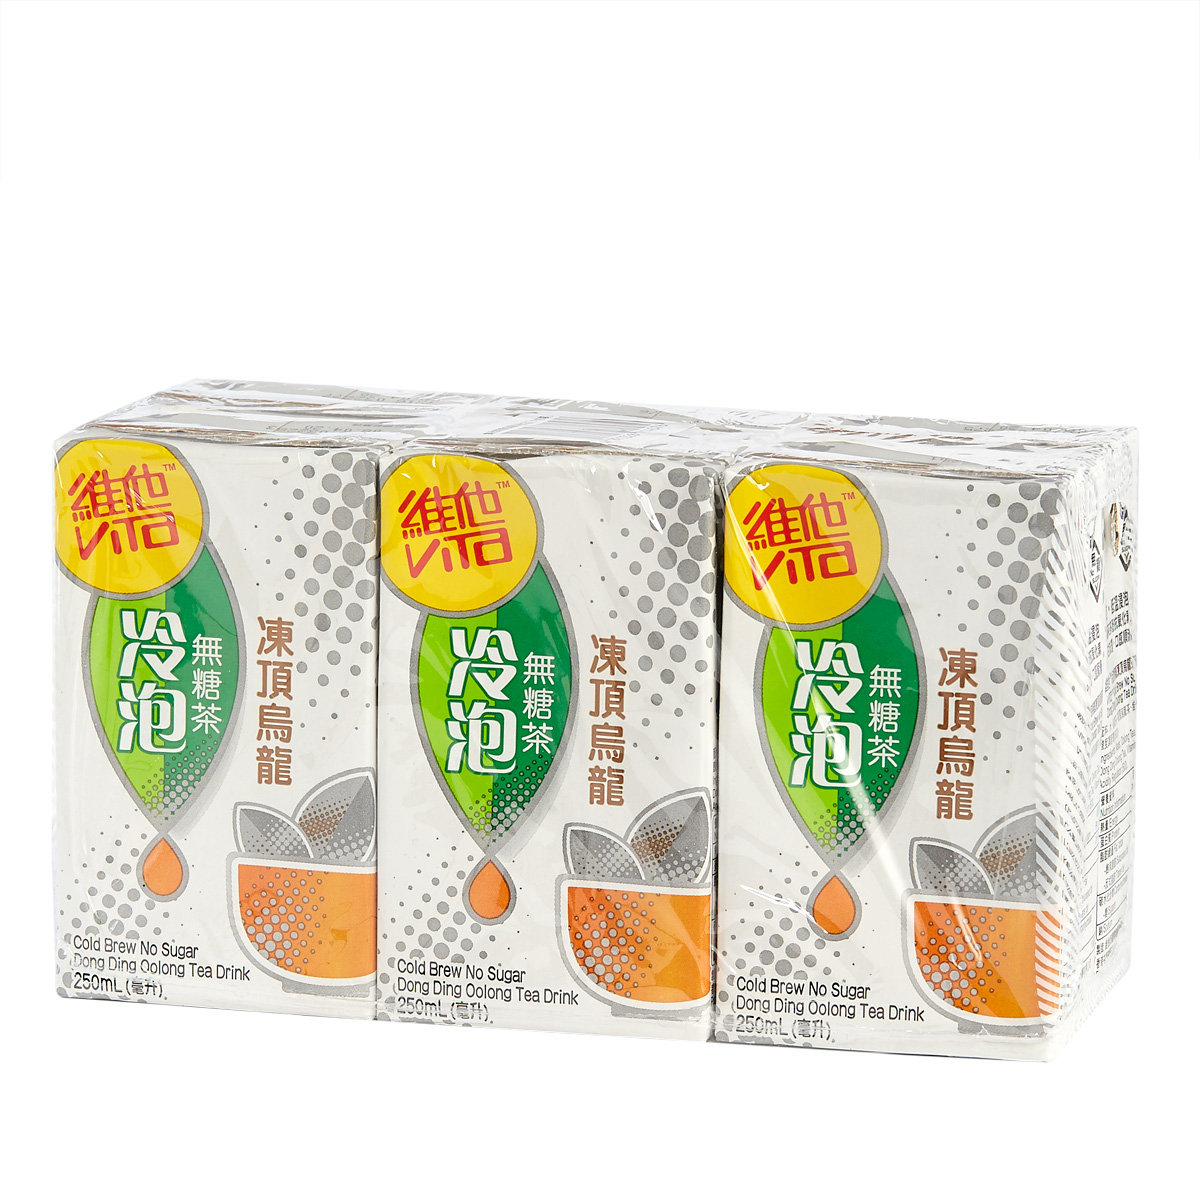 冷泡無糖凍頂烏龍茶 250毫升6包裝 #維他奶 #無糖茶 #消脂 #消滯(產品包裝隨機發放)